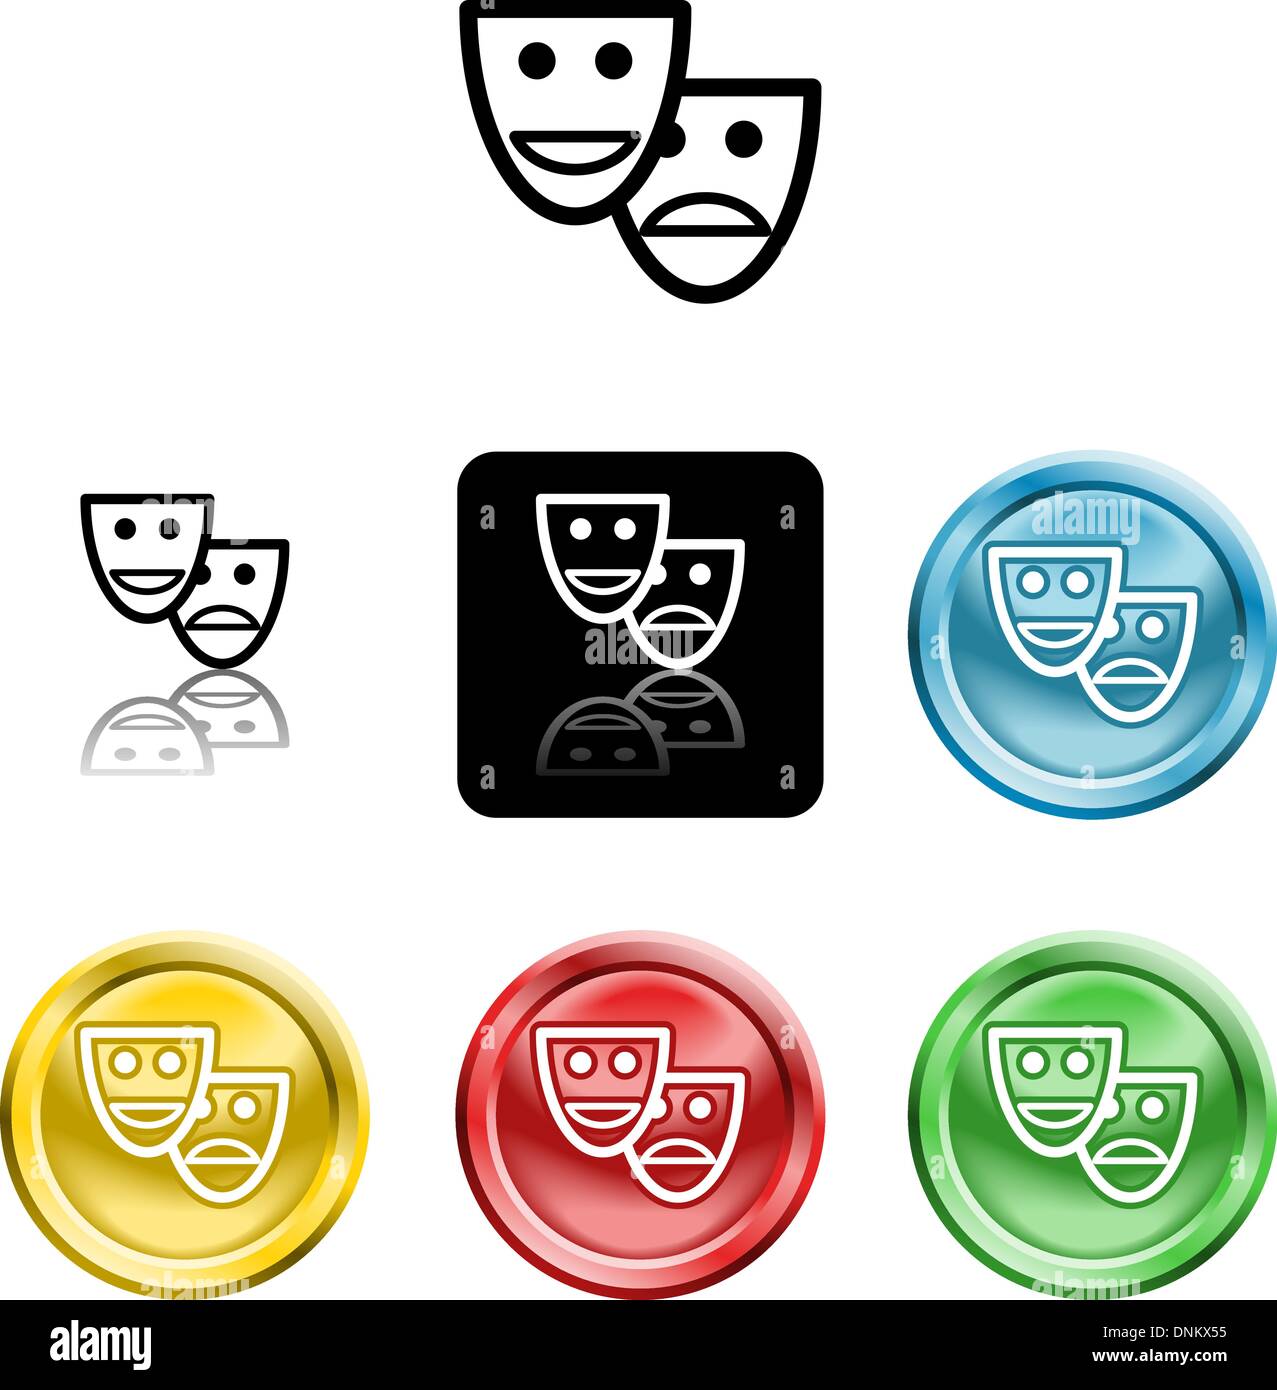 Plusieurs versions d'une icône symbole d'une série de masques stylisés Illustration de Vecteur